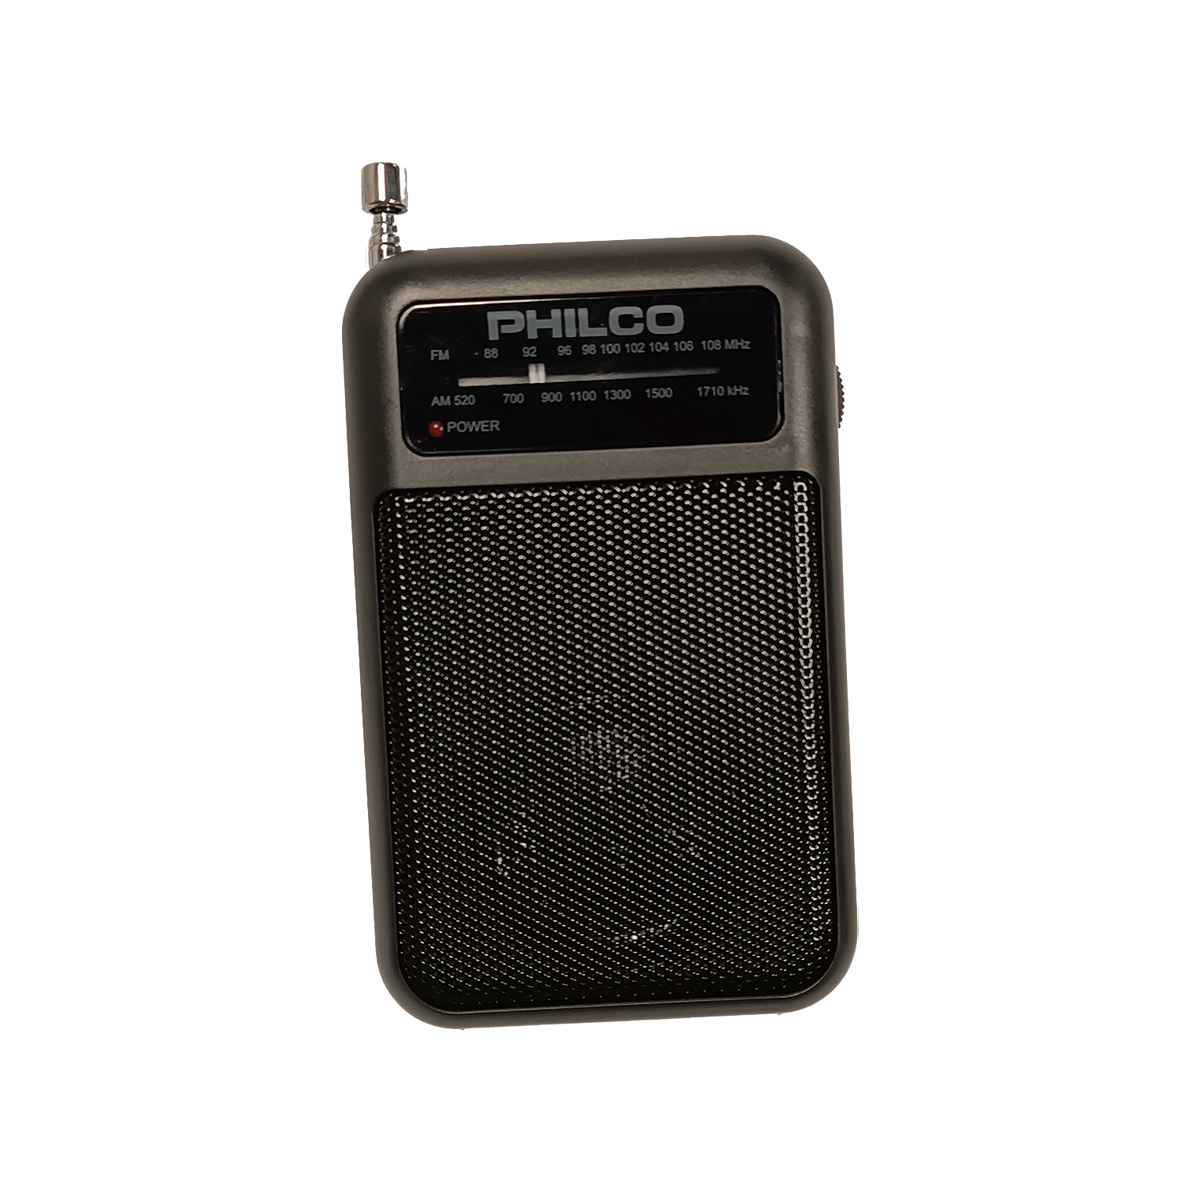 Radio Despertador Philco Pro Alarma Dual Usb Fm Bluetooth® – Carolina´s Home